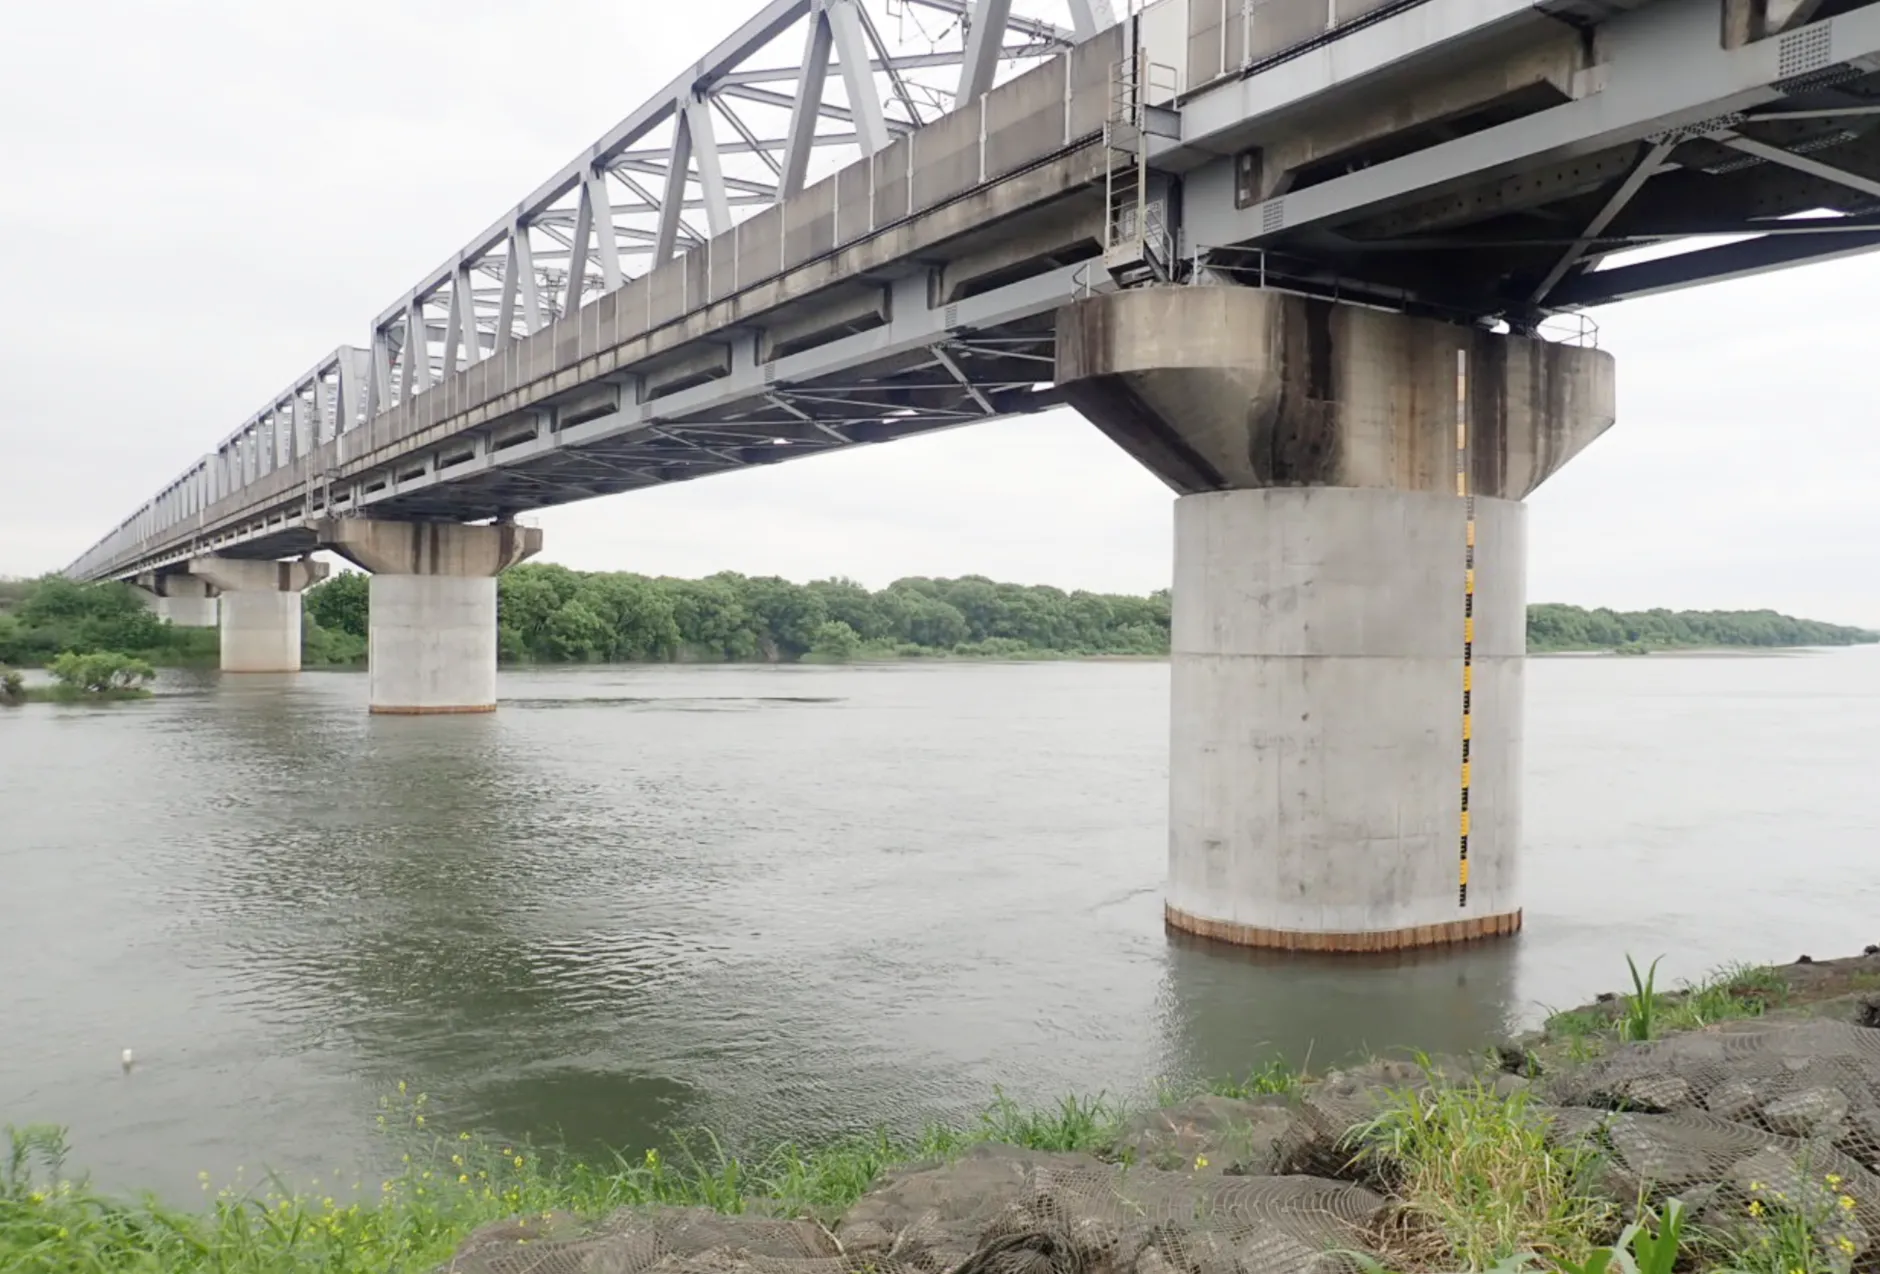 JR東北新幹線 大宮・小山間利根川橋りょう外橋脚補強工事のサムネイル画像です